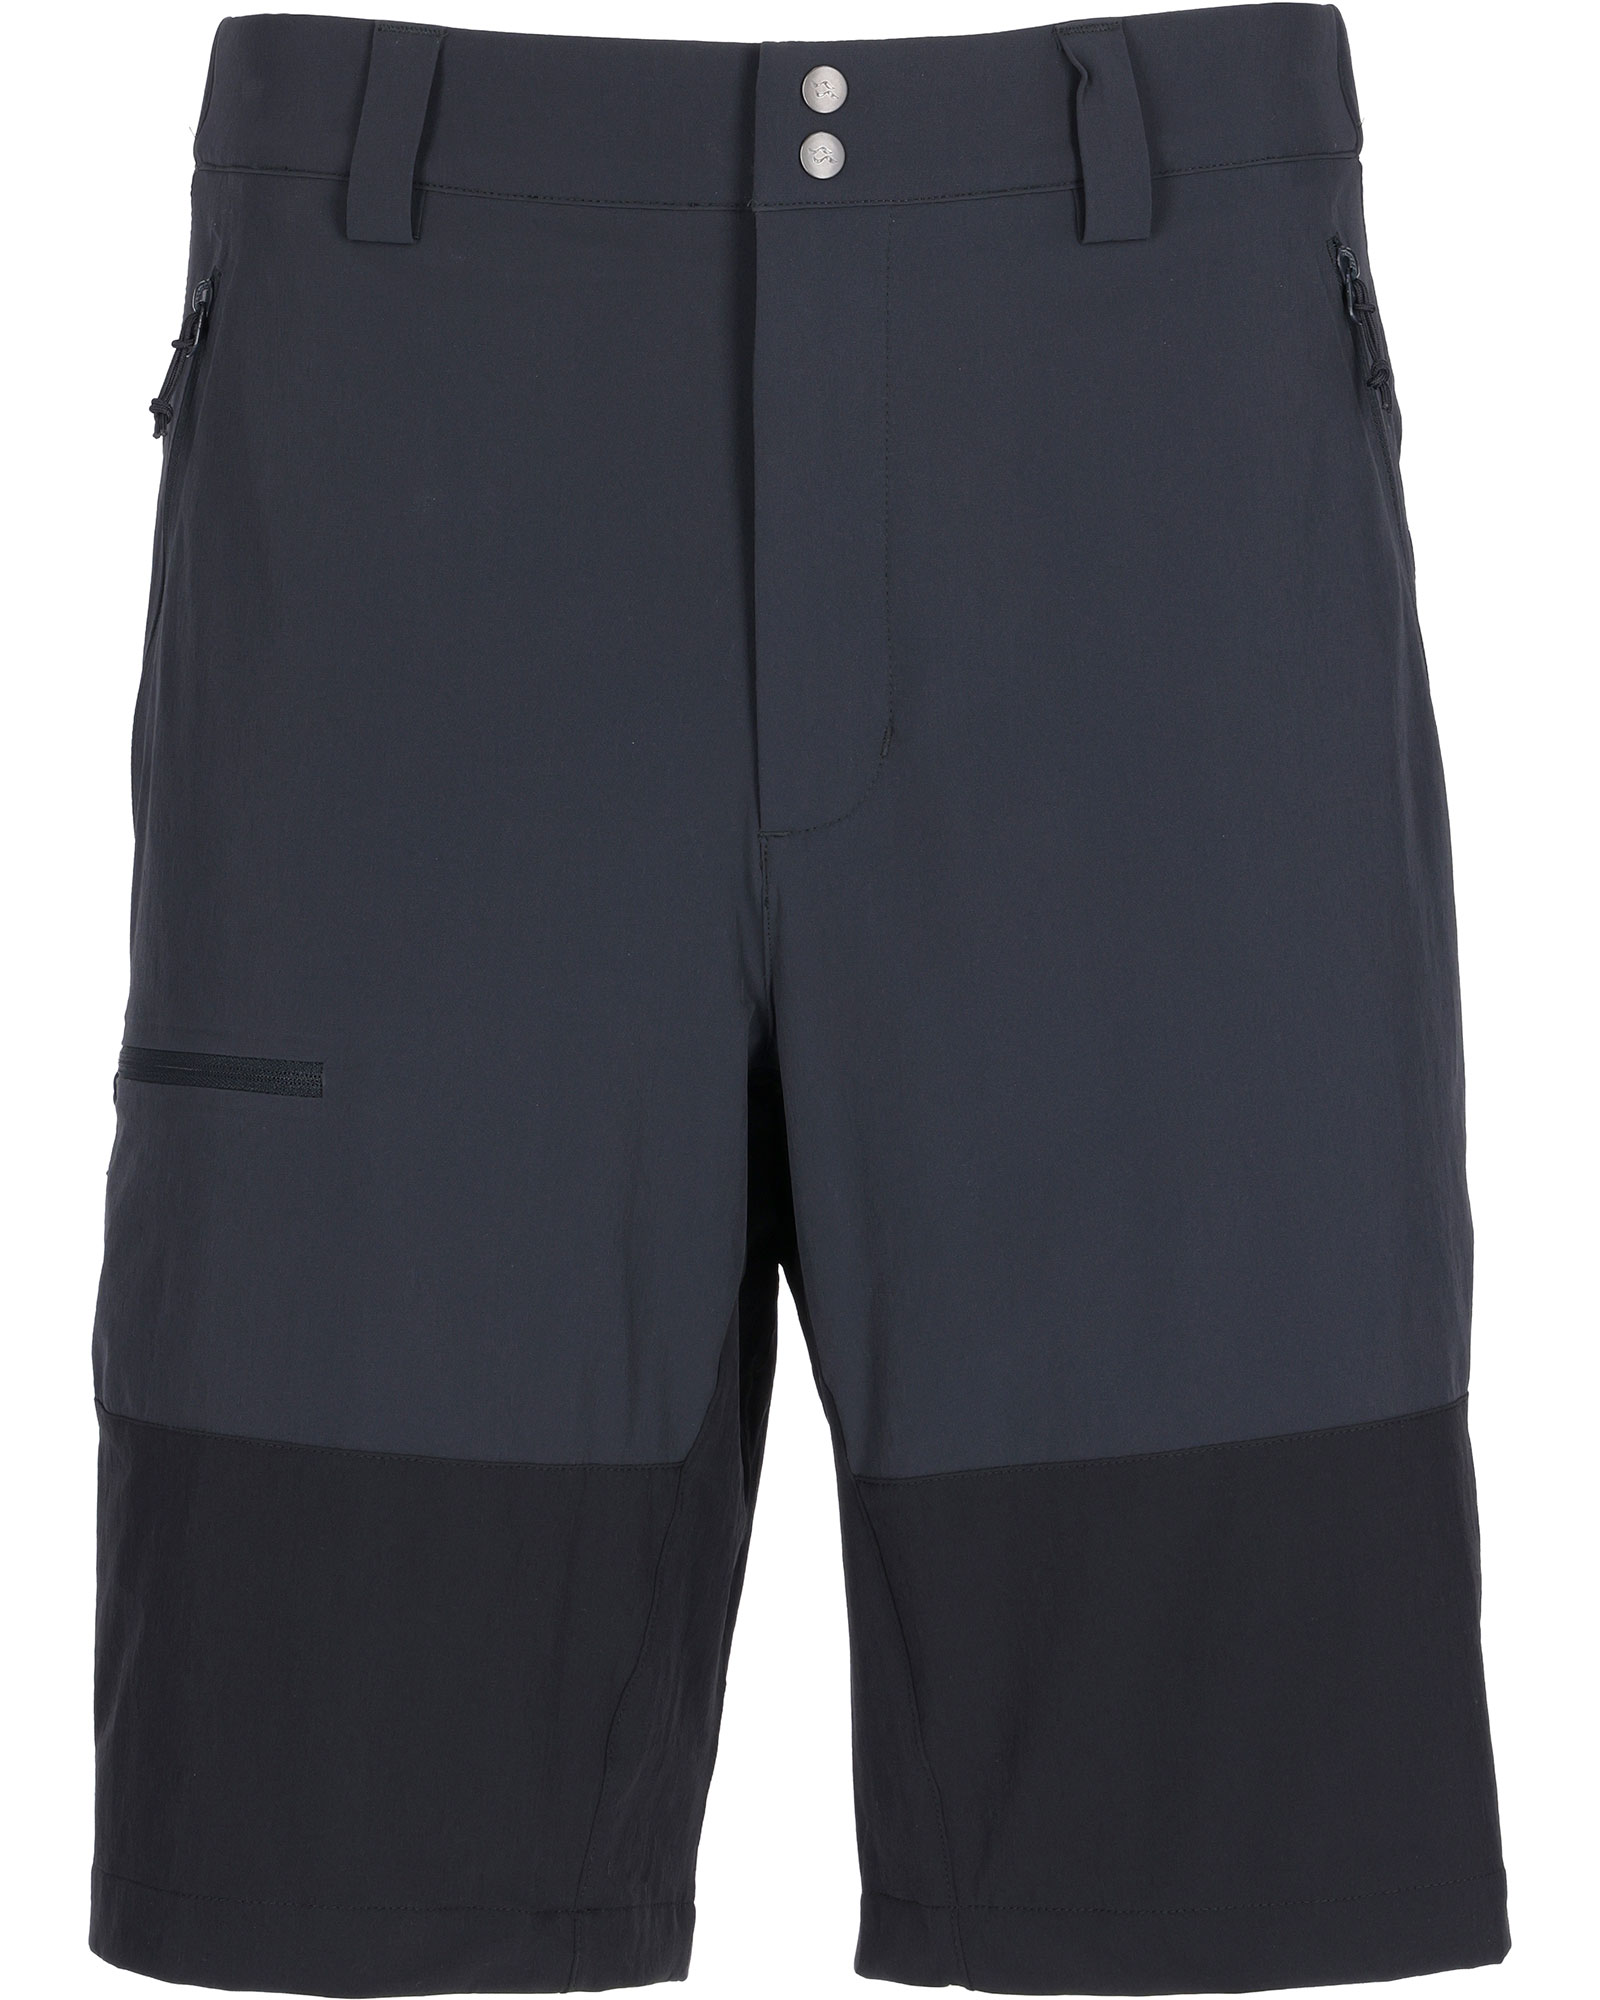 Rab Torque Mountain Men’s Shorts - Beluga 30"